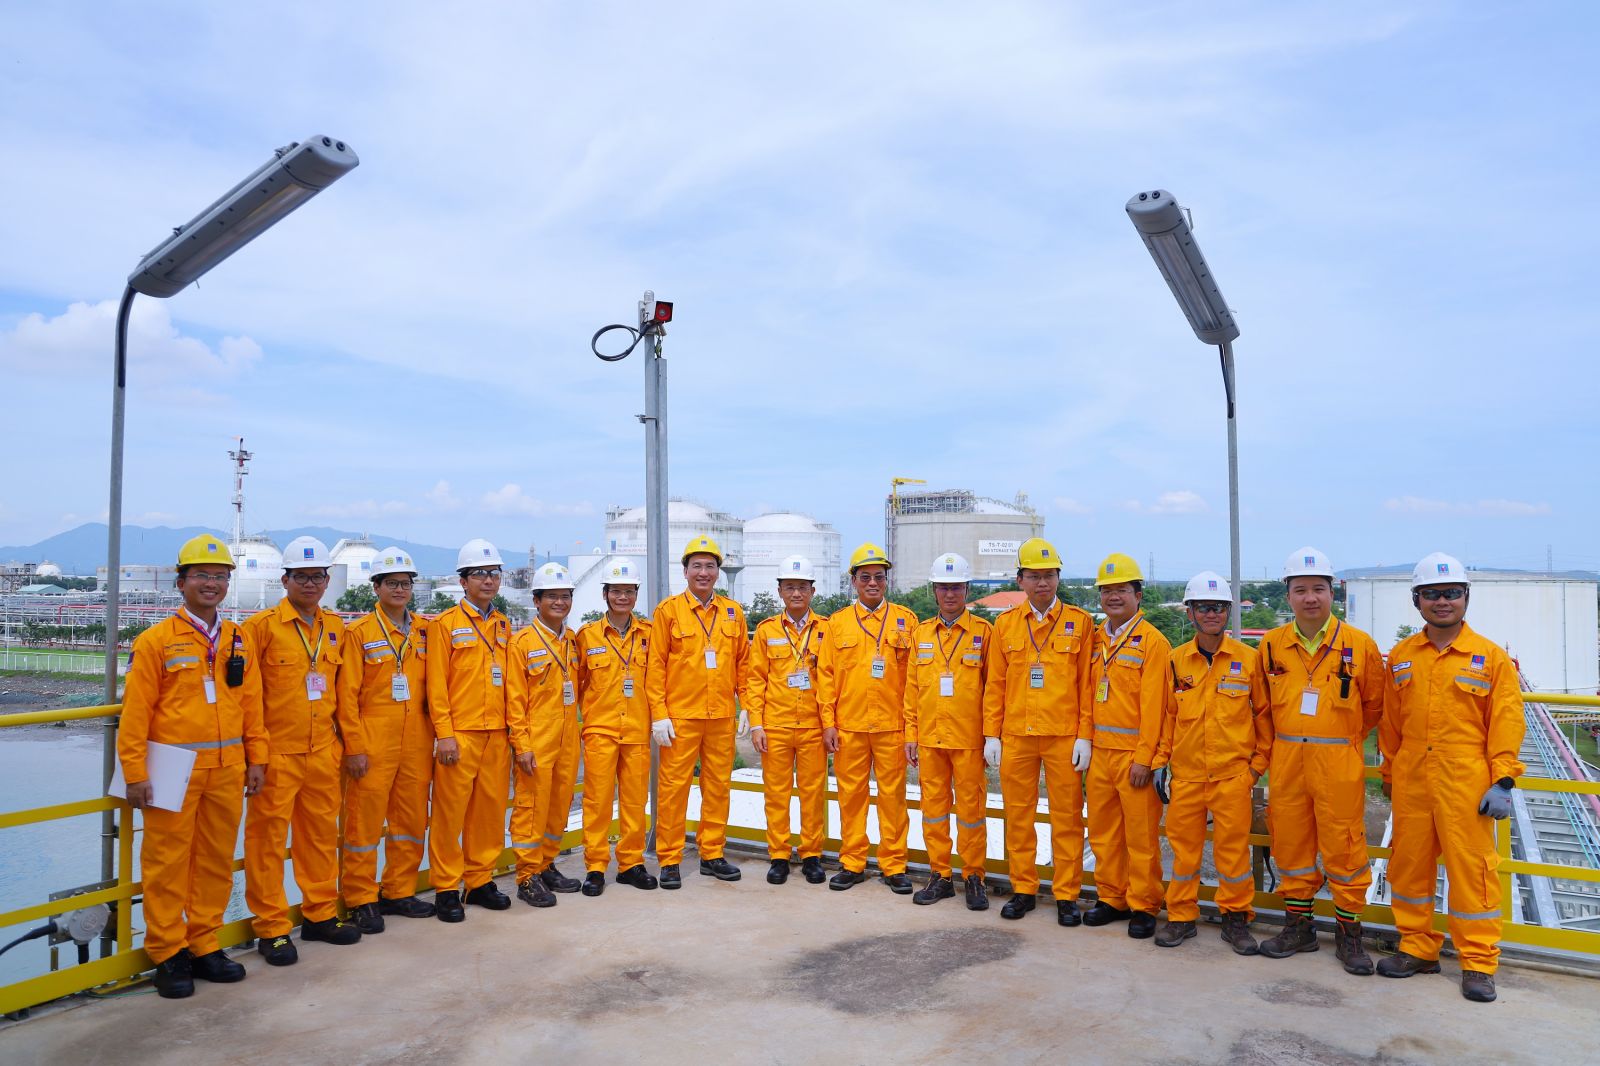 PV GAS tiếp tục khẳng định vai trò là doanh nghiệp tiên phong, dẫn dắt ngành công nghiệp khí Việt Nam theo chiến lược phát triển năng lượng của Chính phủ 